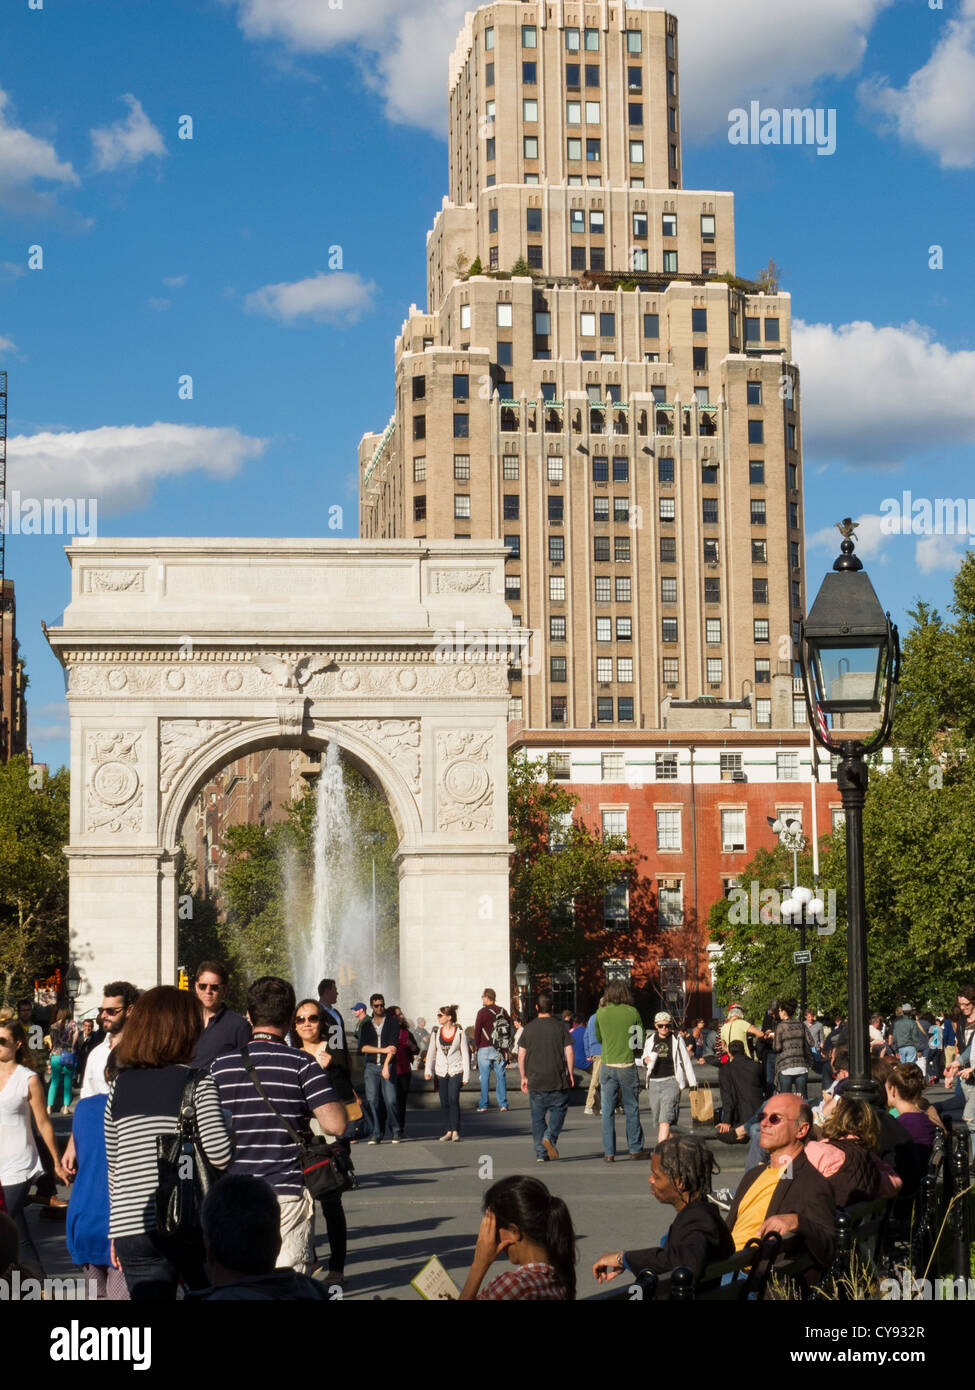 Washington Square Arch, Fontaine et de la foule, Washington Square Park, Greenwich Village, NEW YORK Banque D'Images